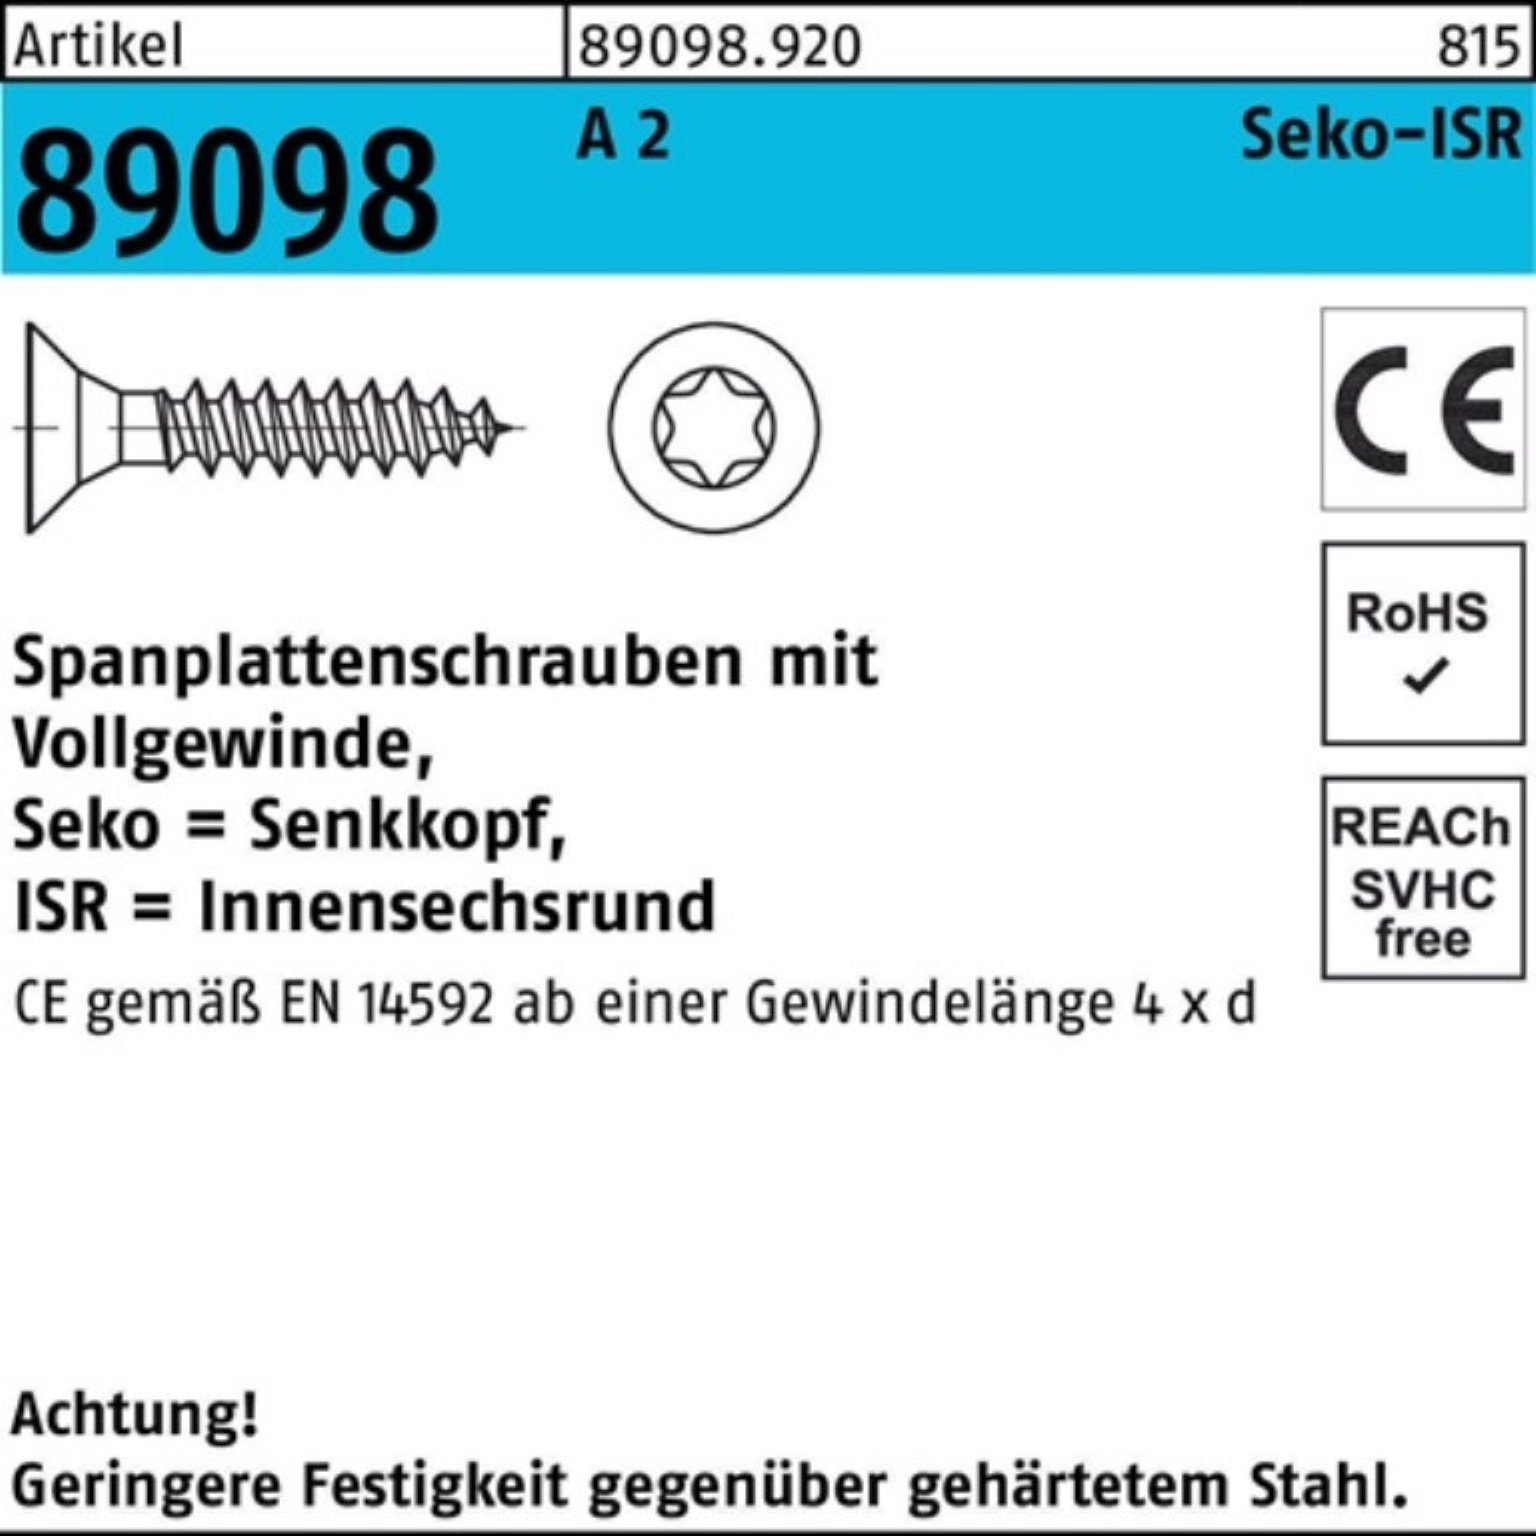 Reyher Spanplattenschraube 1000er Pack Spanplattenschraube R 89098 SEKO ISR VG 4x 40-T20 A 2 1000